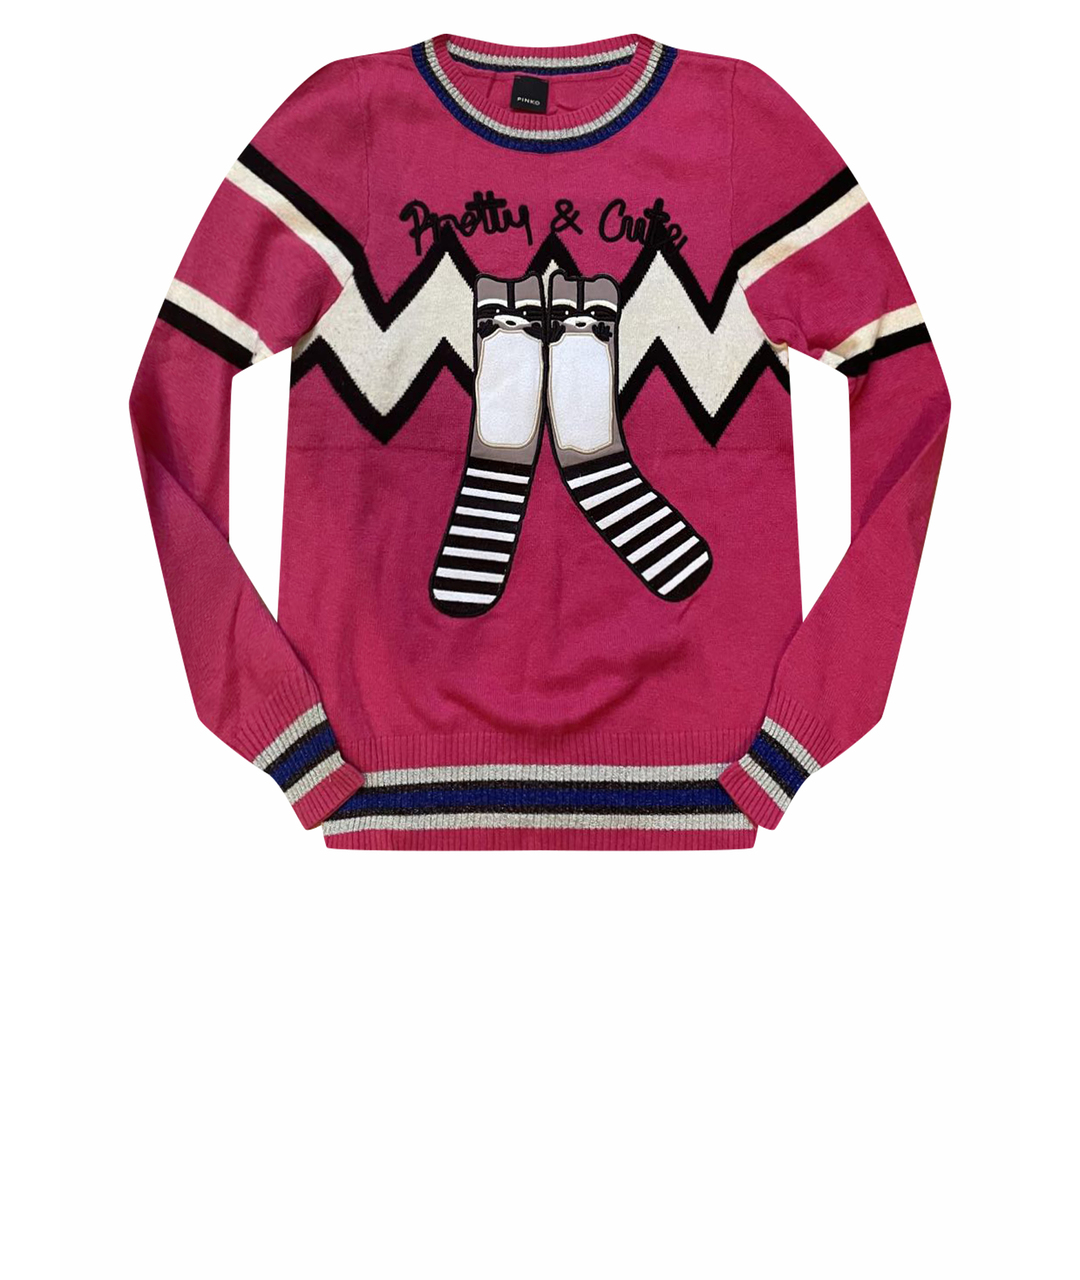 PINKO Розовый шерстяной джемпер / свитер, фото 1